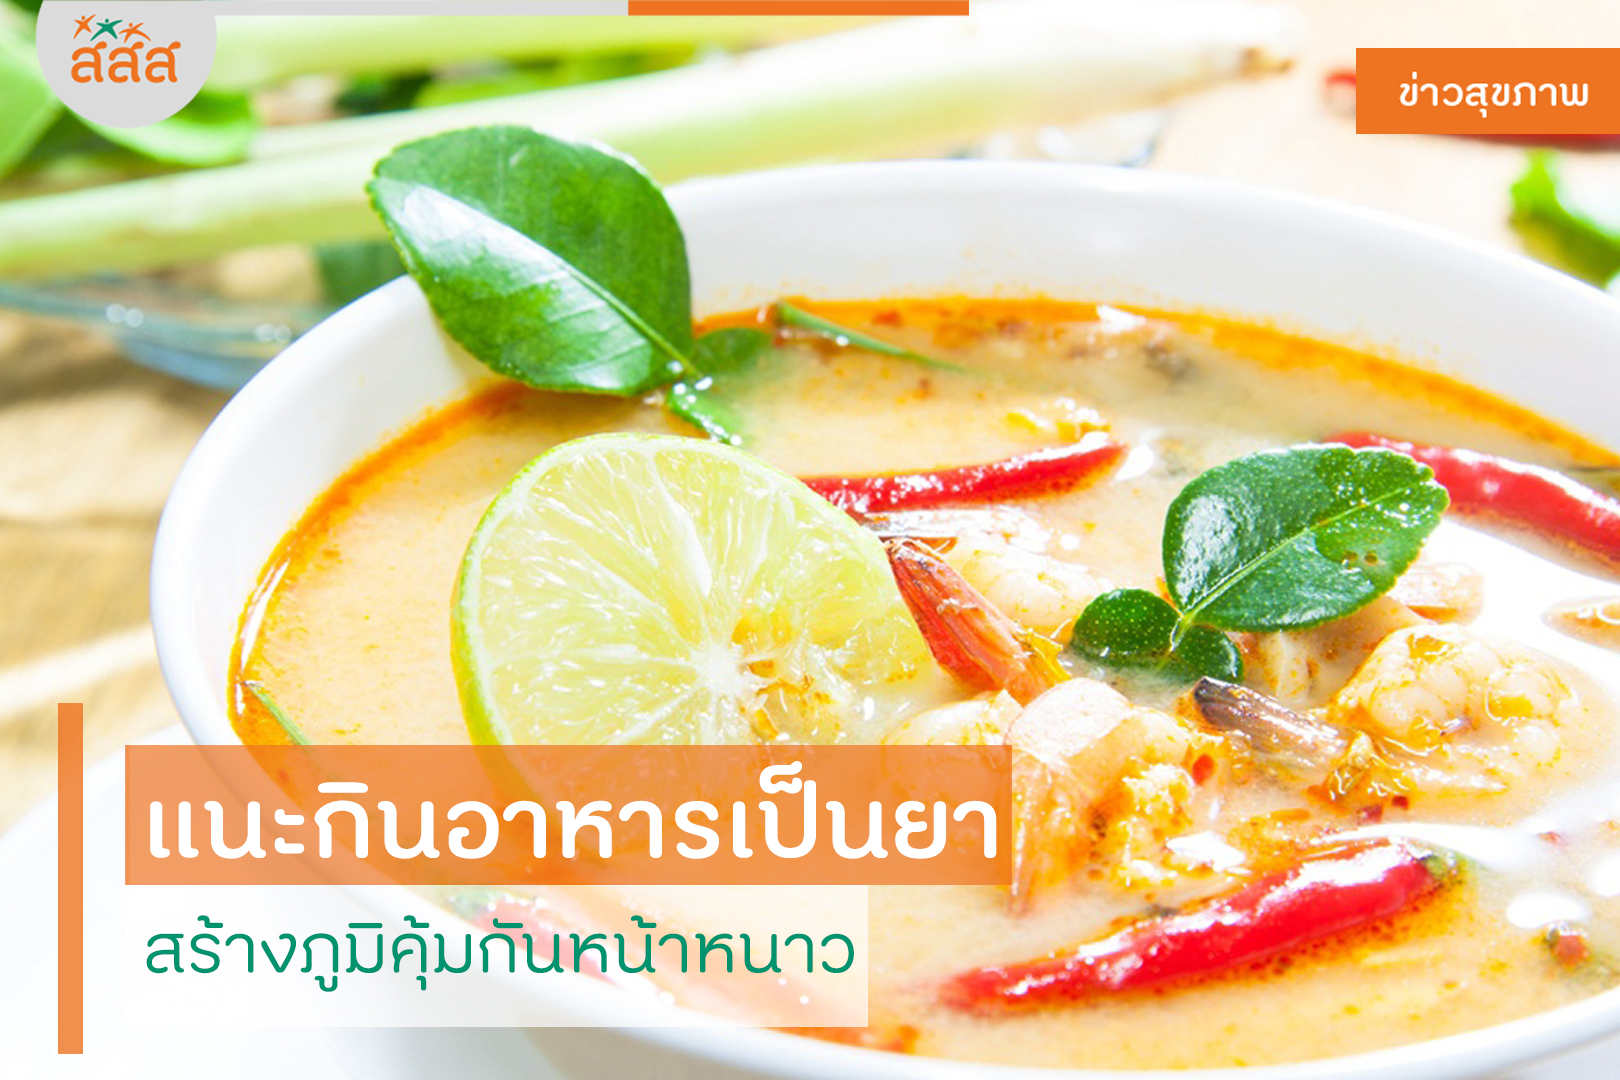 แนะกินอาหารเป็นยา สร้างภูมิคุ้มกันหน้าหนาว thaihealth